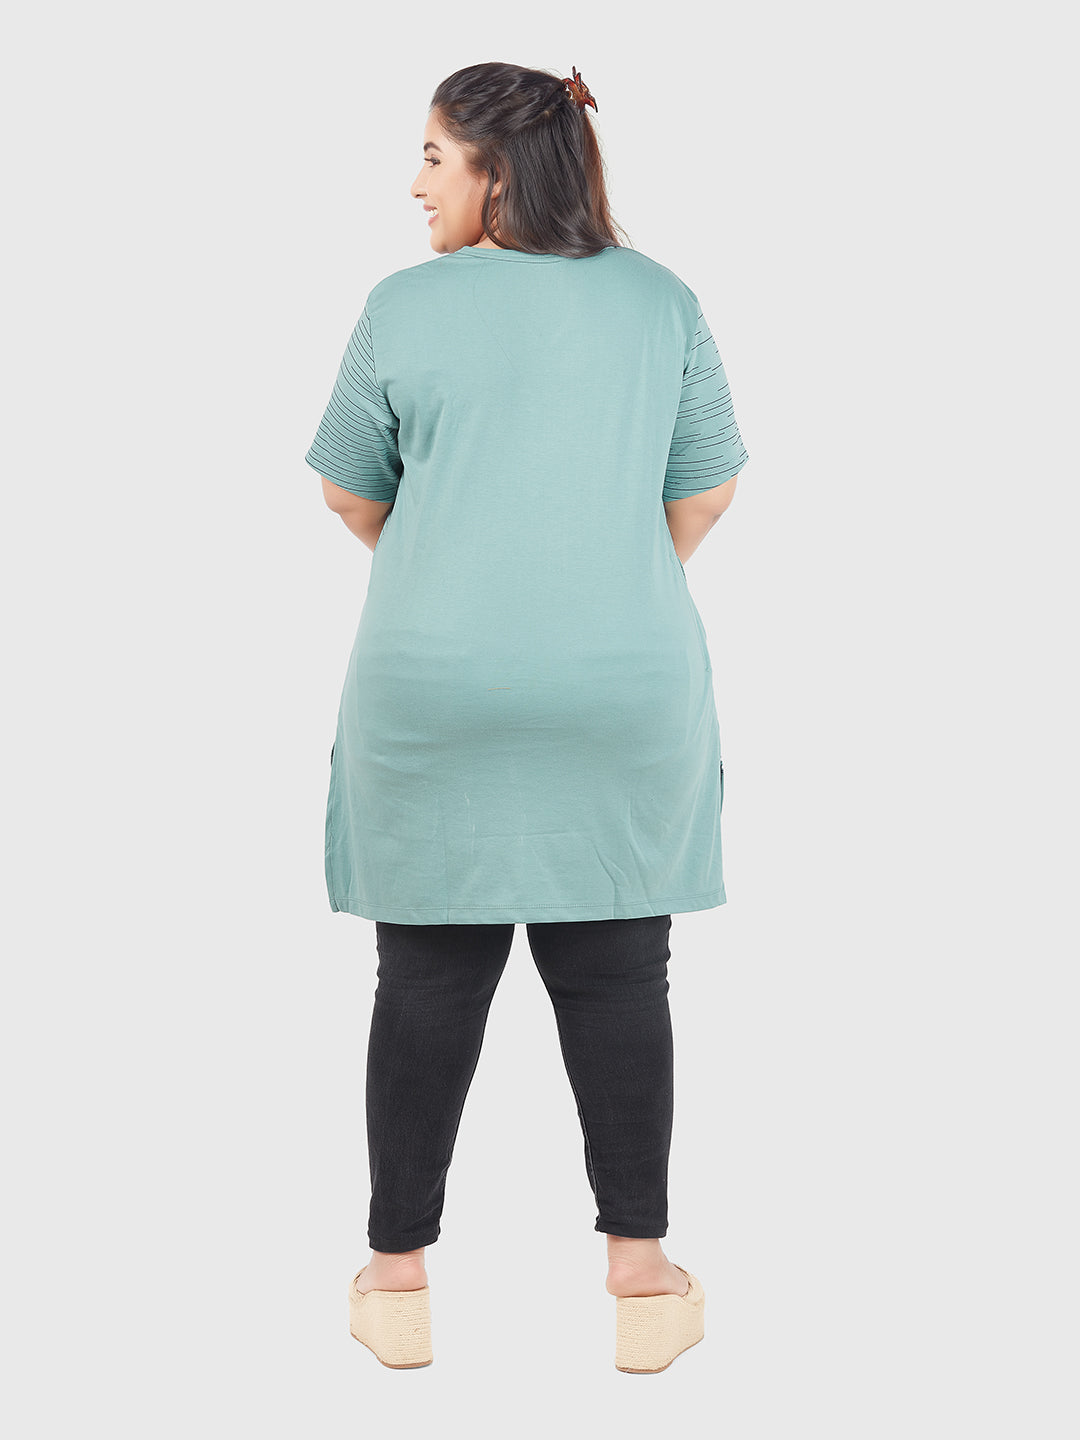 Share 227+ buy long tops for leggings